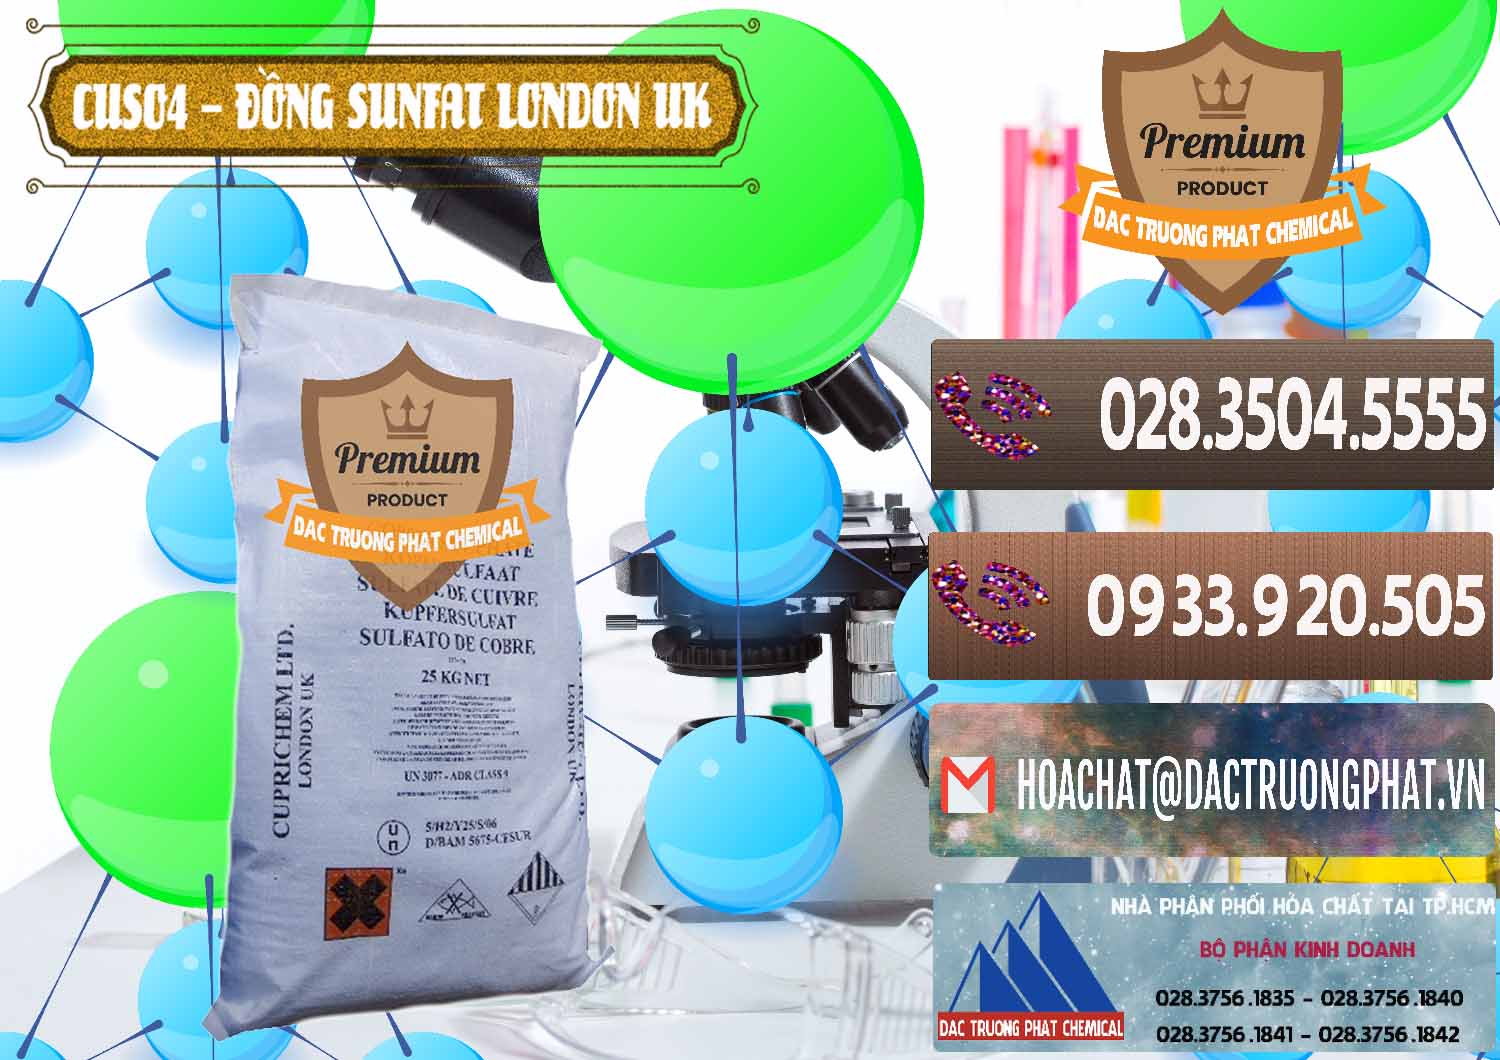 Đơn vị chuyên bán và cung cấp CuSO4 – Đồng Sunfat Anh Uk Kingdoms - 0478 - Chuyên phân phối _ nhập khẩu hóa chất tại TP.HCM - hoachatviet.net